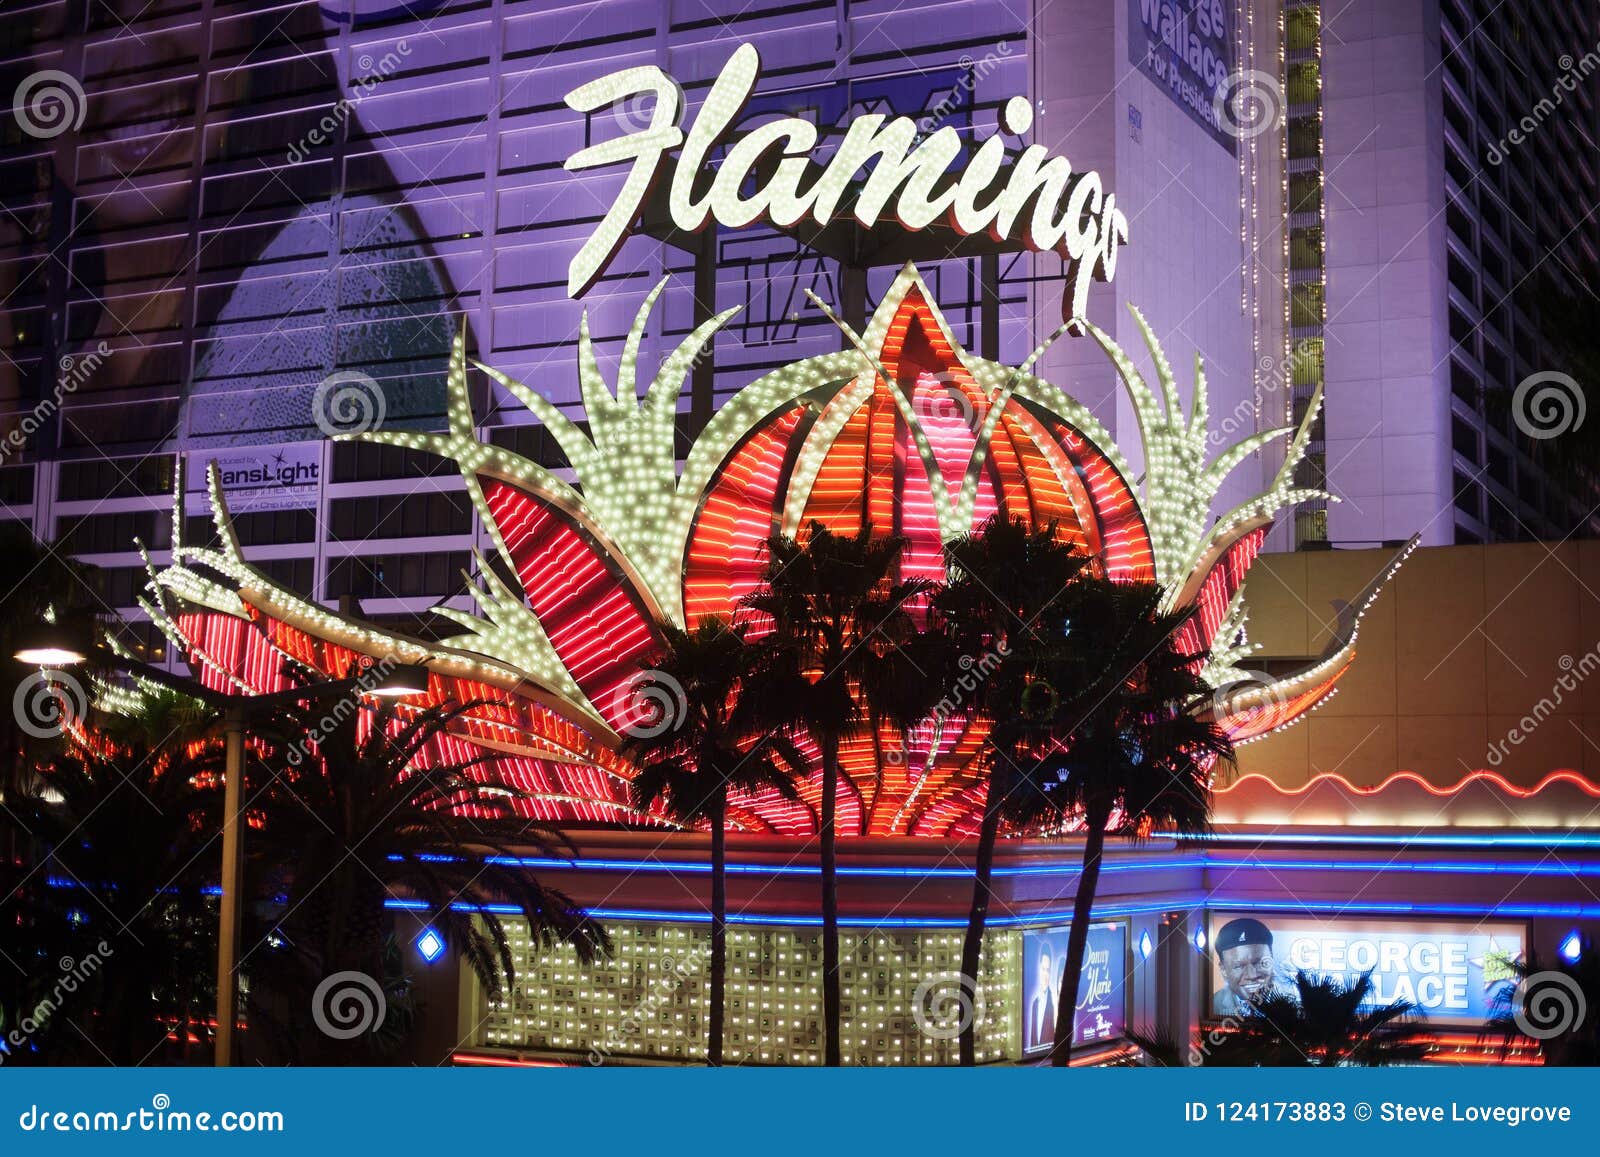 flamingo casino las vegas stage